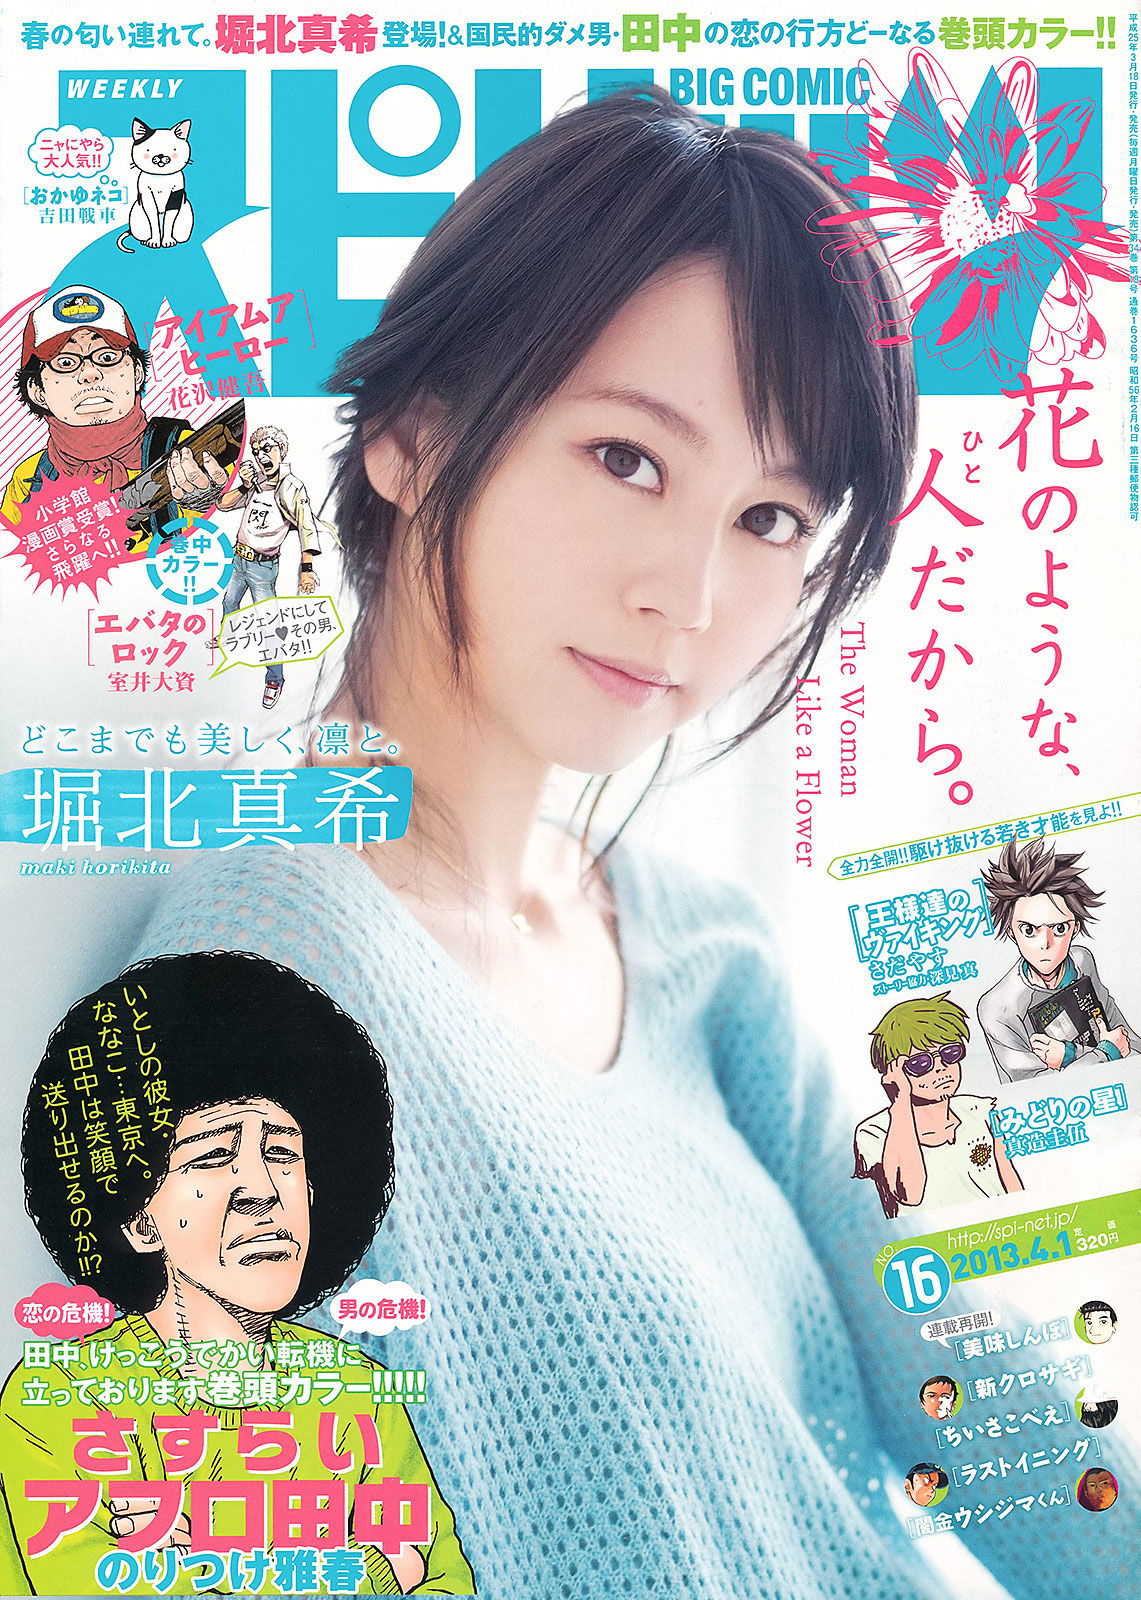 Maki Horikita Weekly Big Comic Spirits Magazine